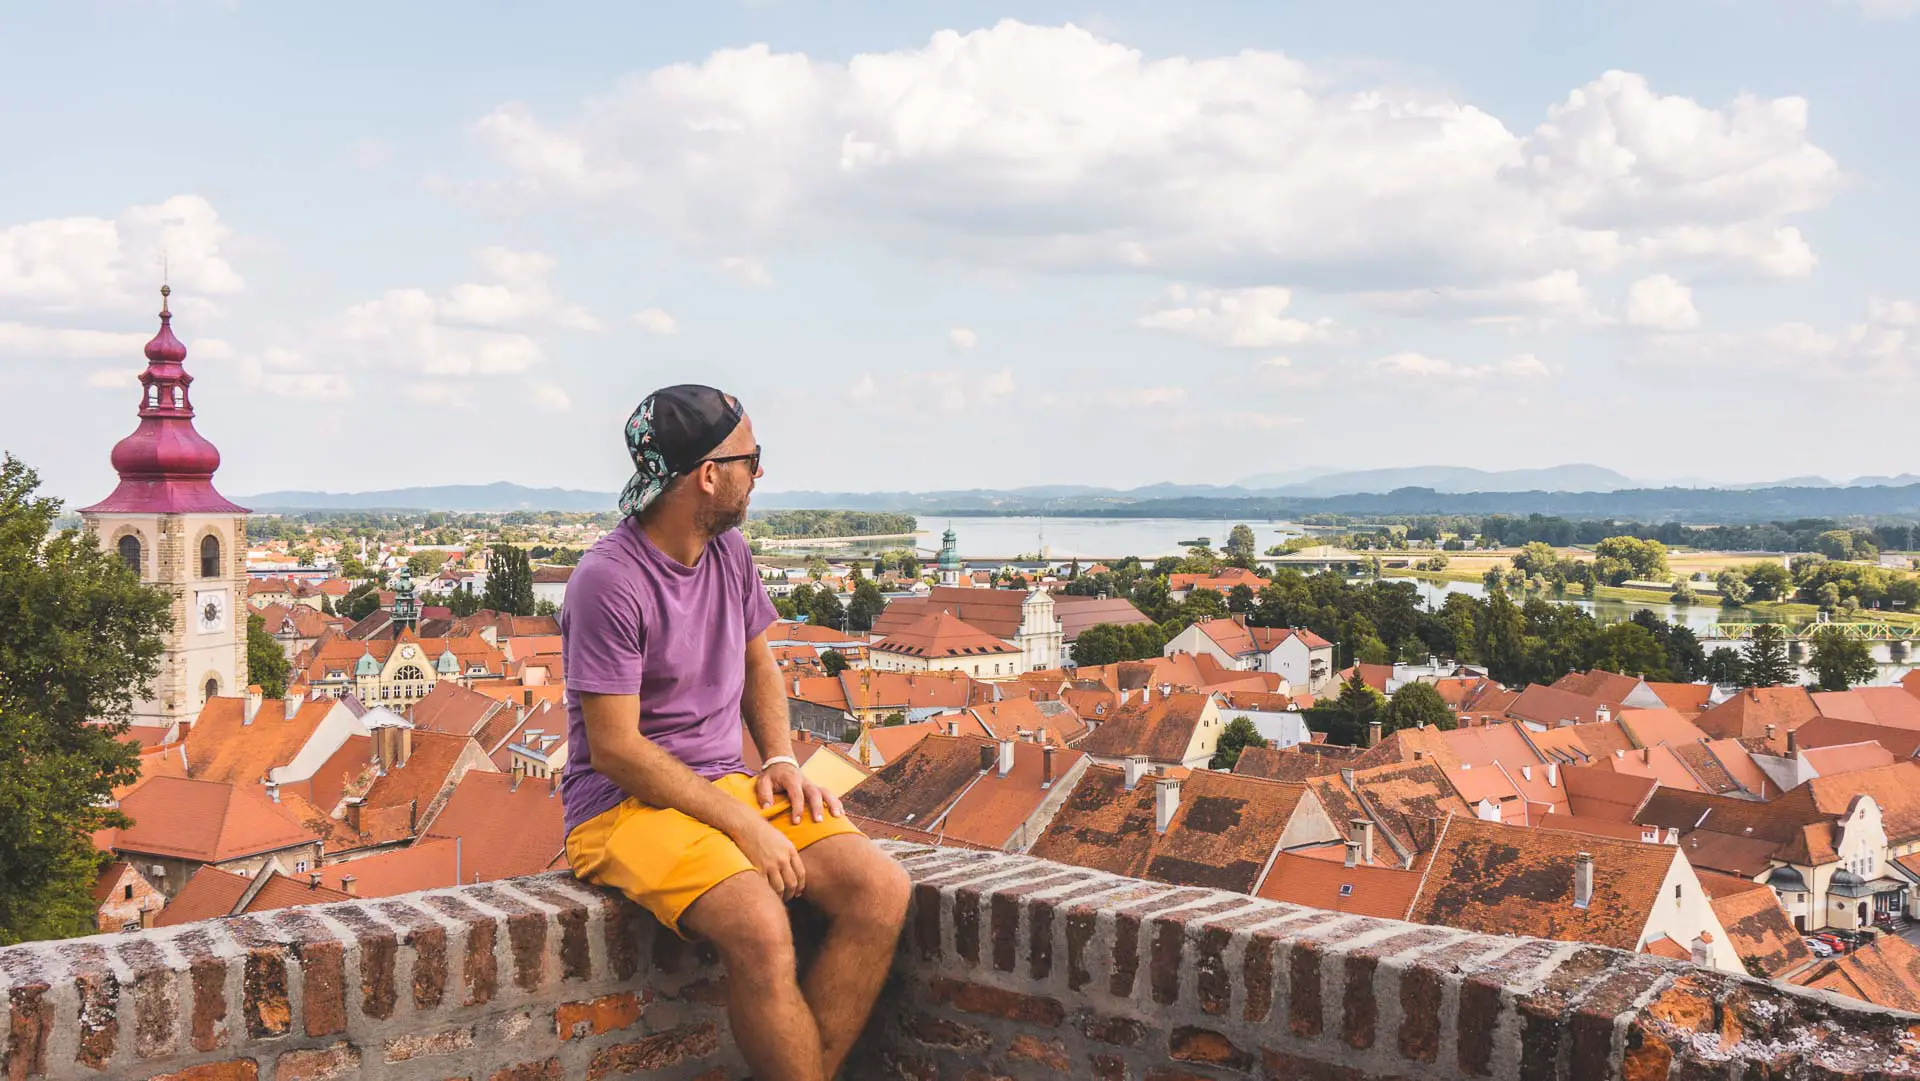 Wat te doen in Ptuj, de oudste stad van Slovenië